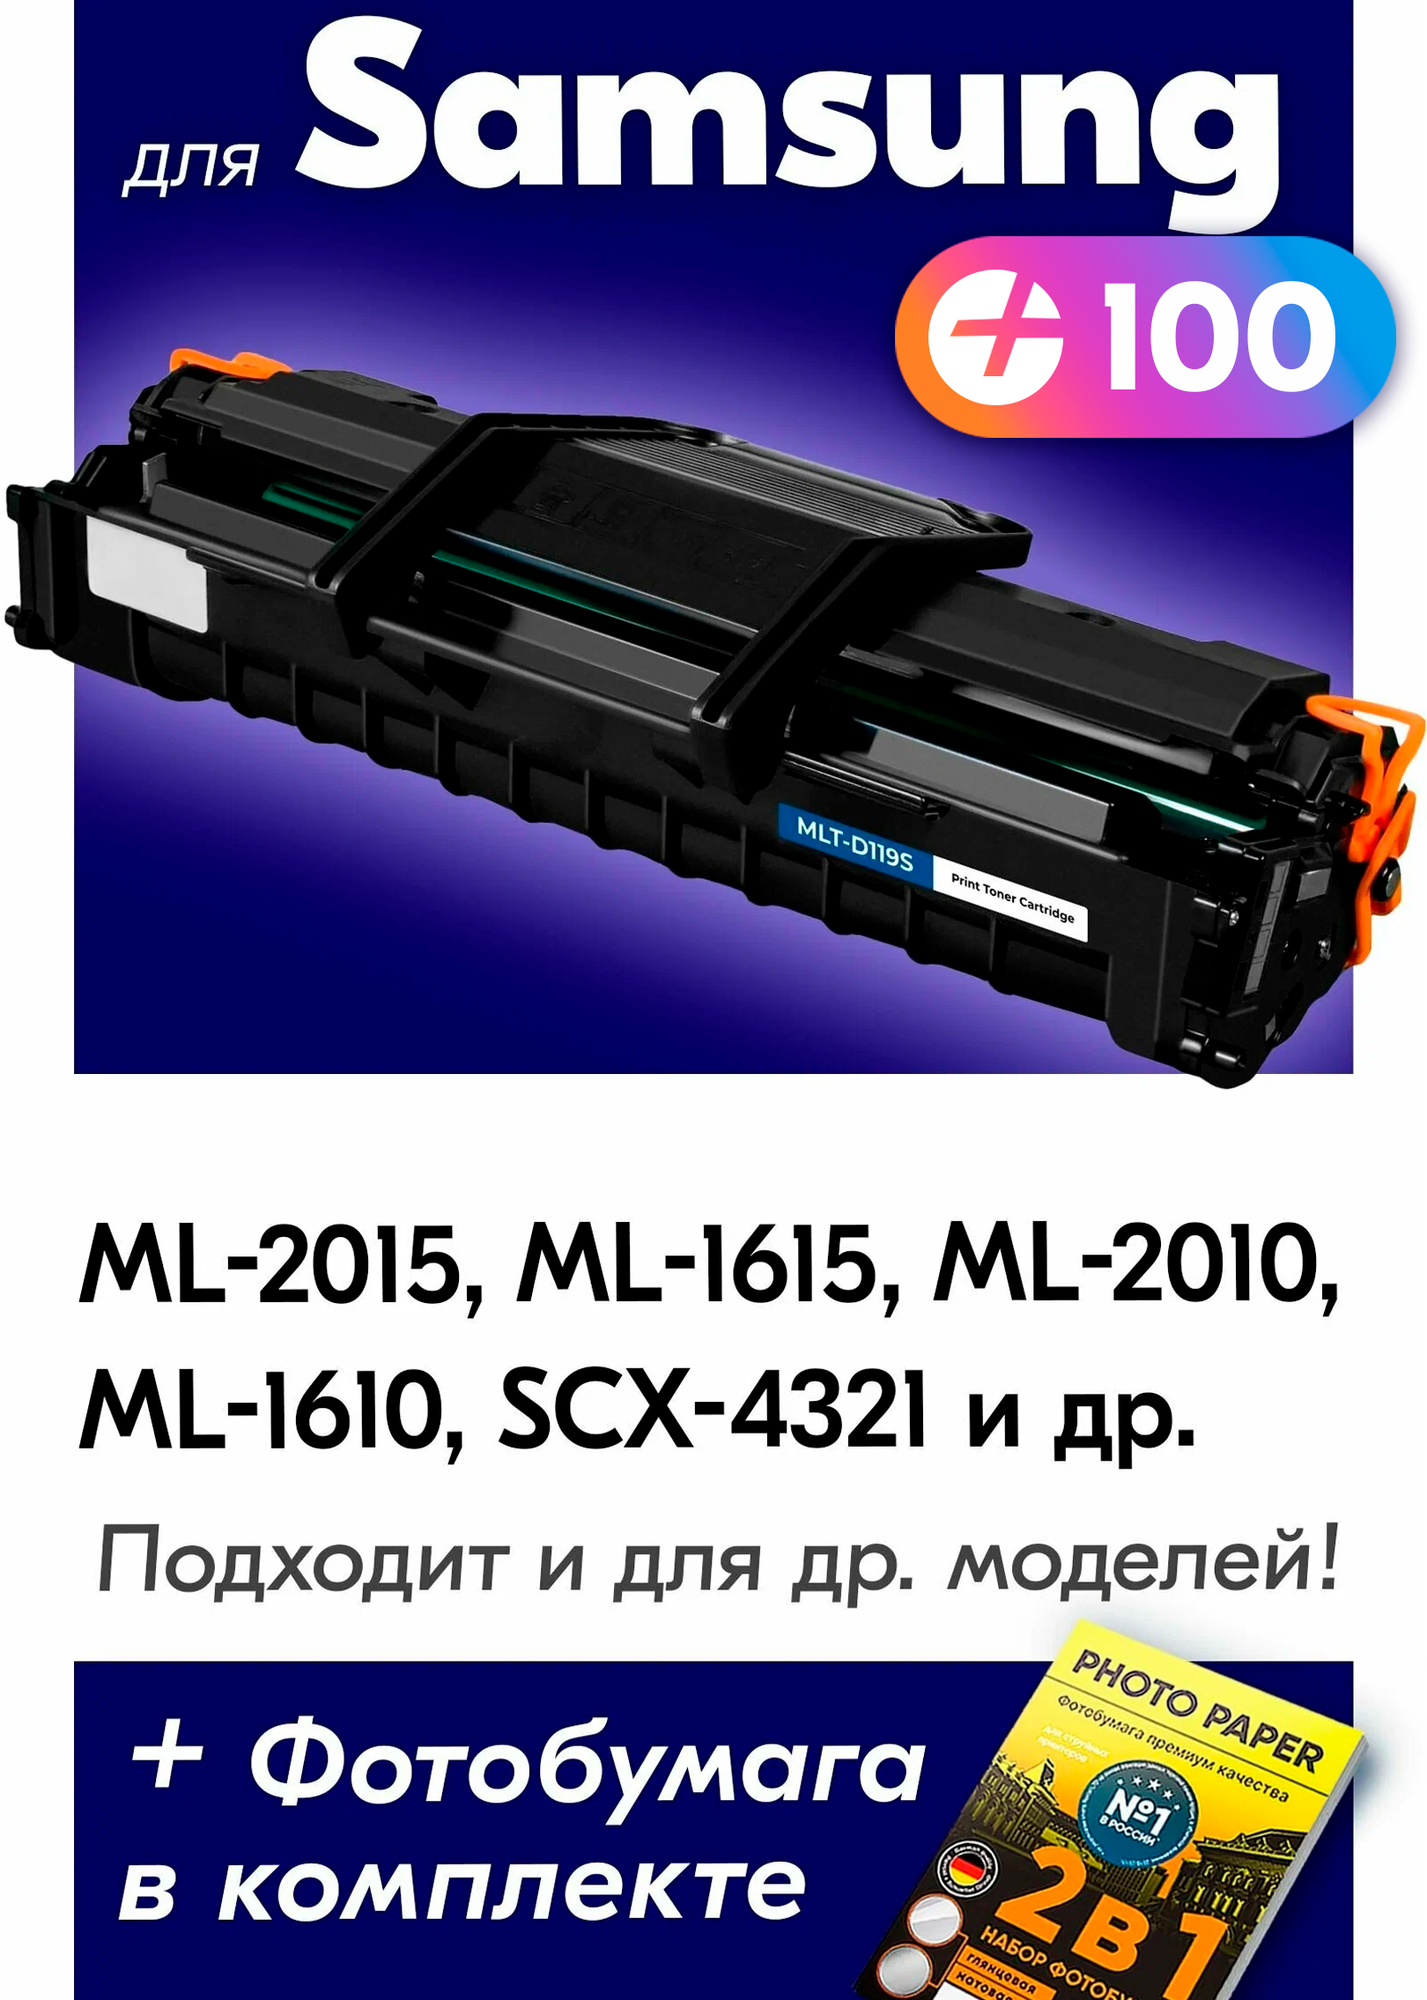 Лазерный картридж для Samsung MLT-D119S, Samsung ML-2015, ML-1615, ML-2010, ML-1610 и др. с краской (тонером) черный новый заправляемый, 3000 копий